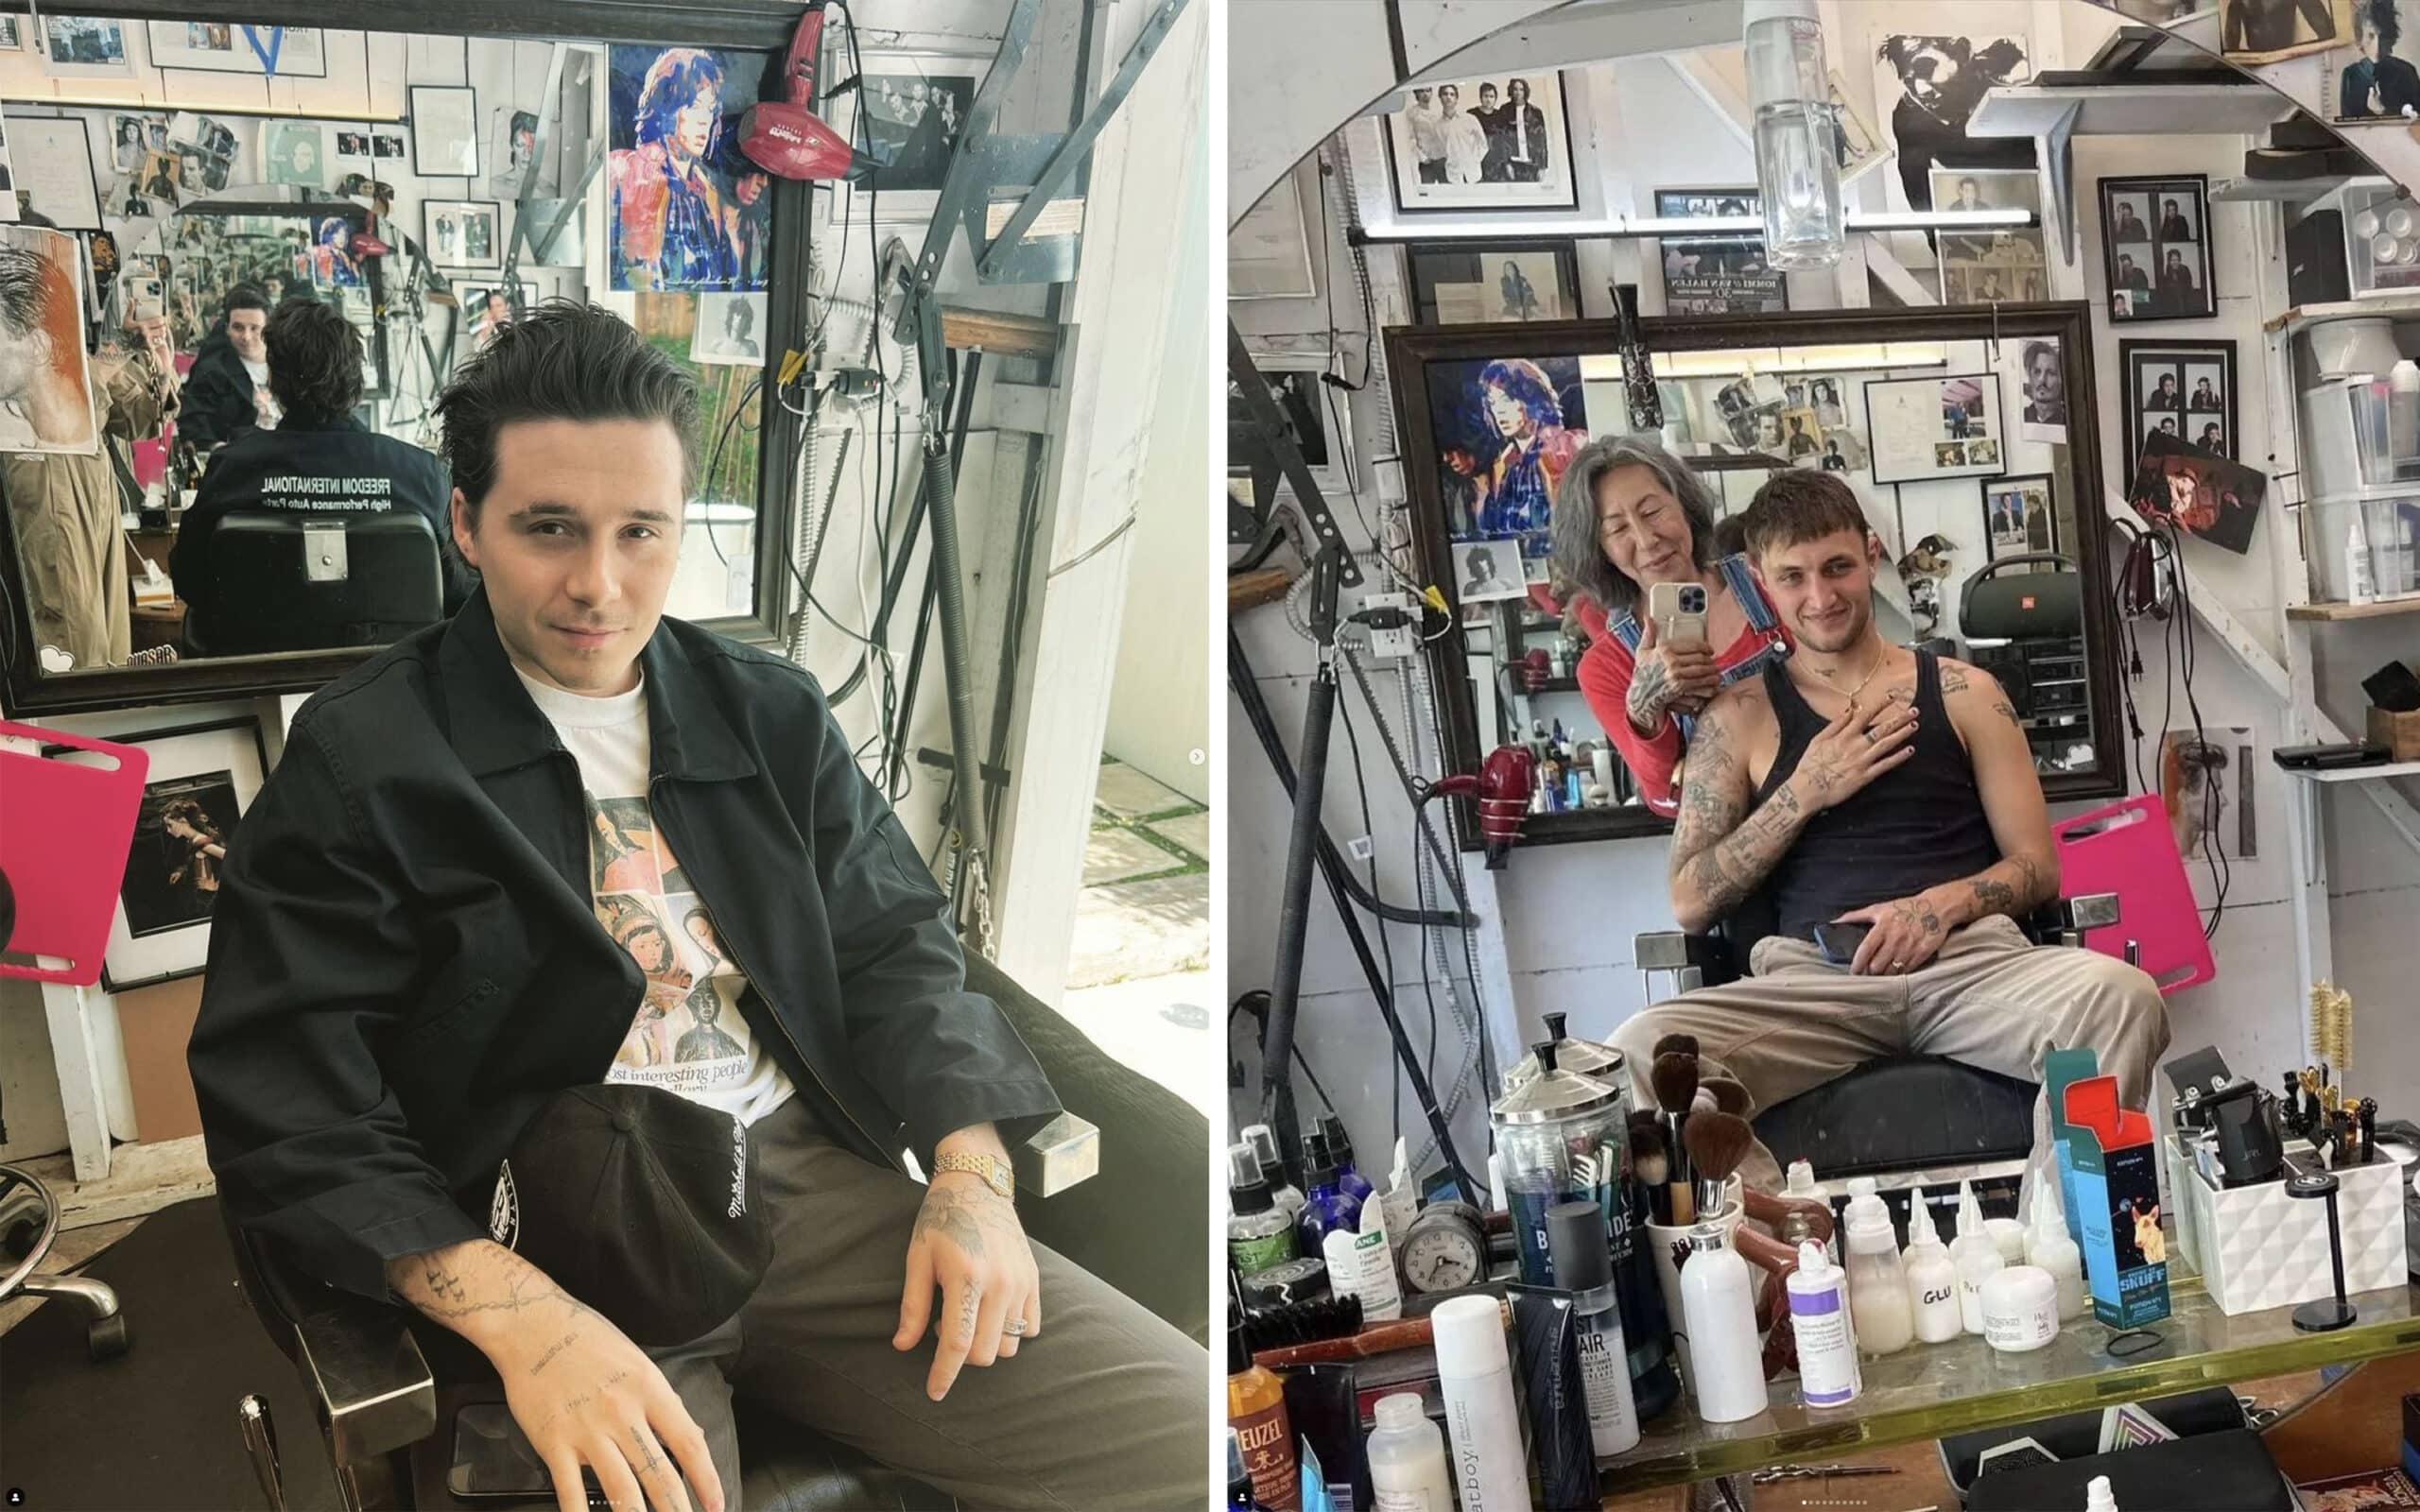 Brooklyn Beckham and Anwar Hadid in Mira's garage studio